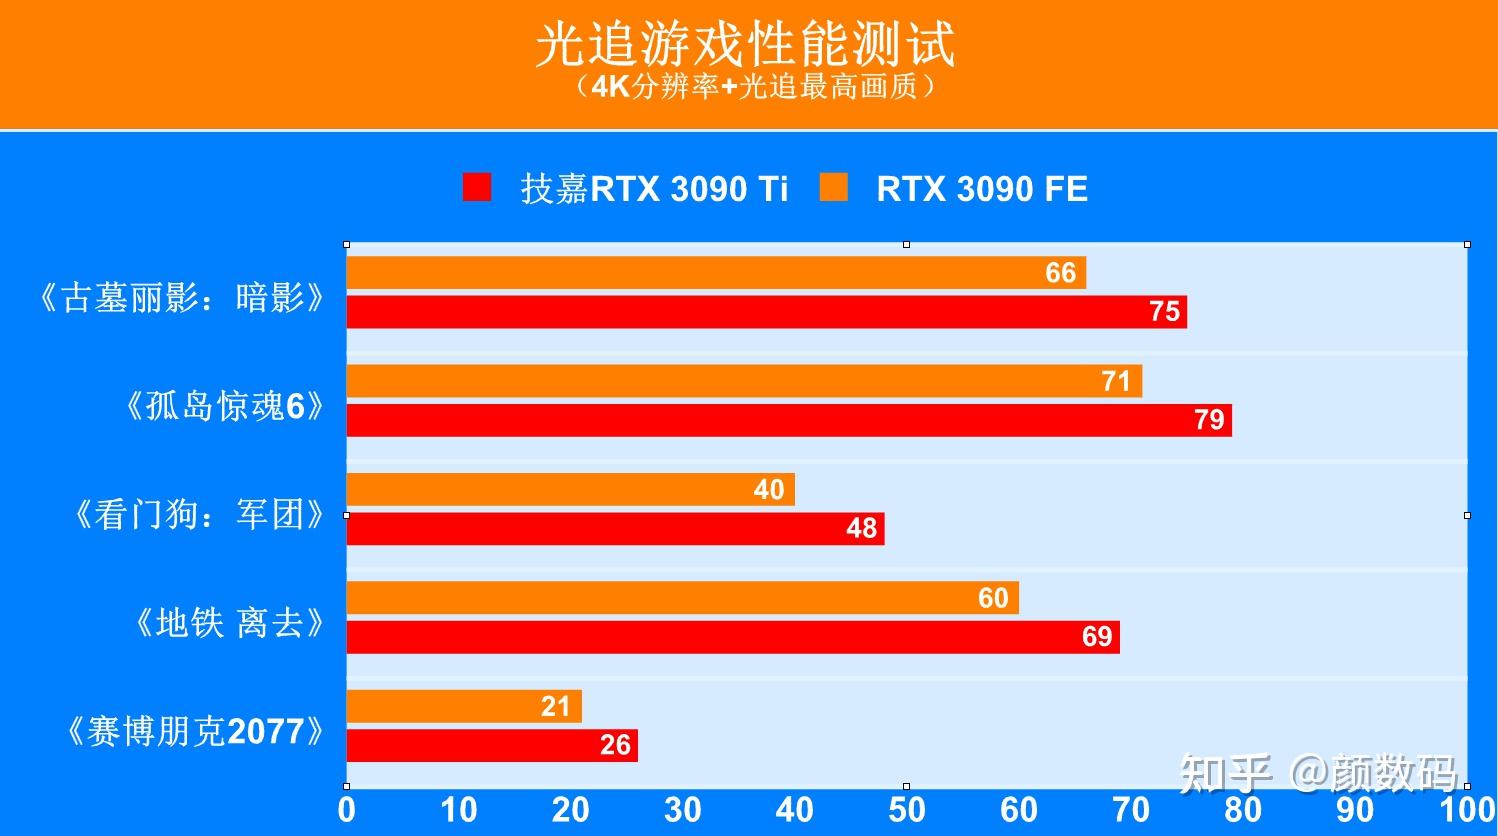 GTX660显卡全面解析：DX11技术支持与卓越性能对比  第1张